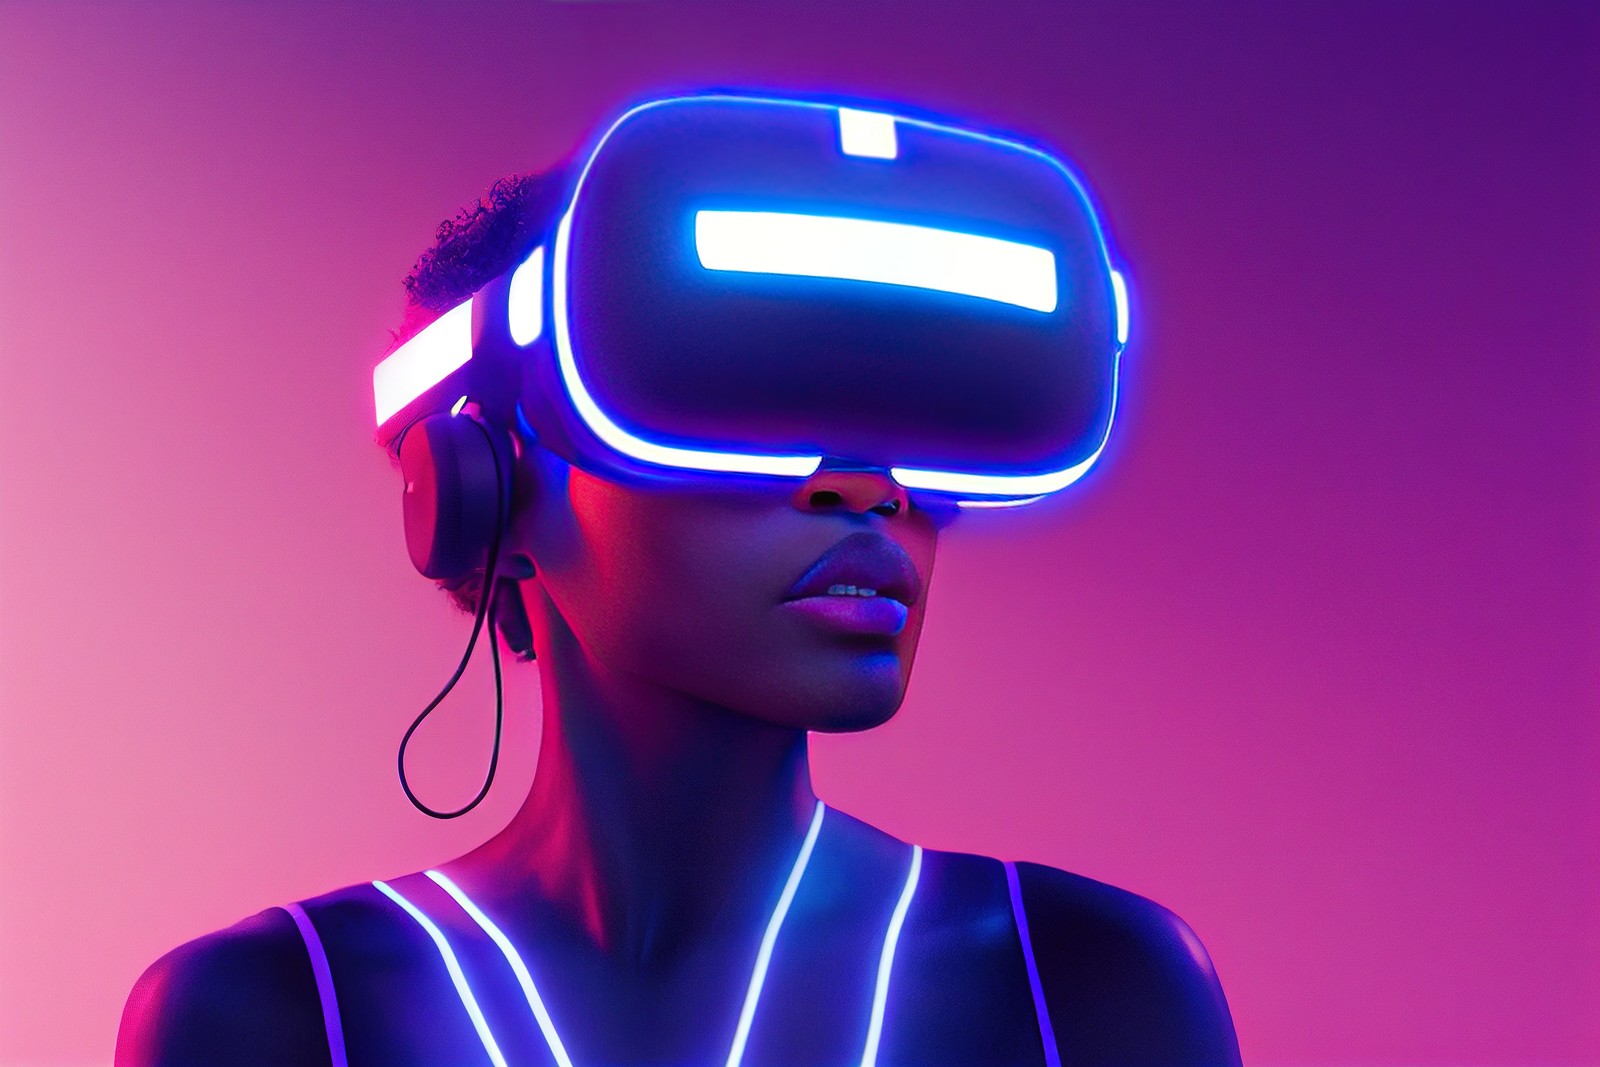 图片展示了一位女性戴着虚拟现实头盔，身上有发光的线条，背景是紫色调，科技感十足。